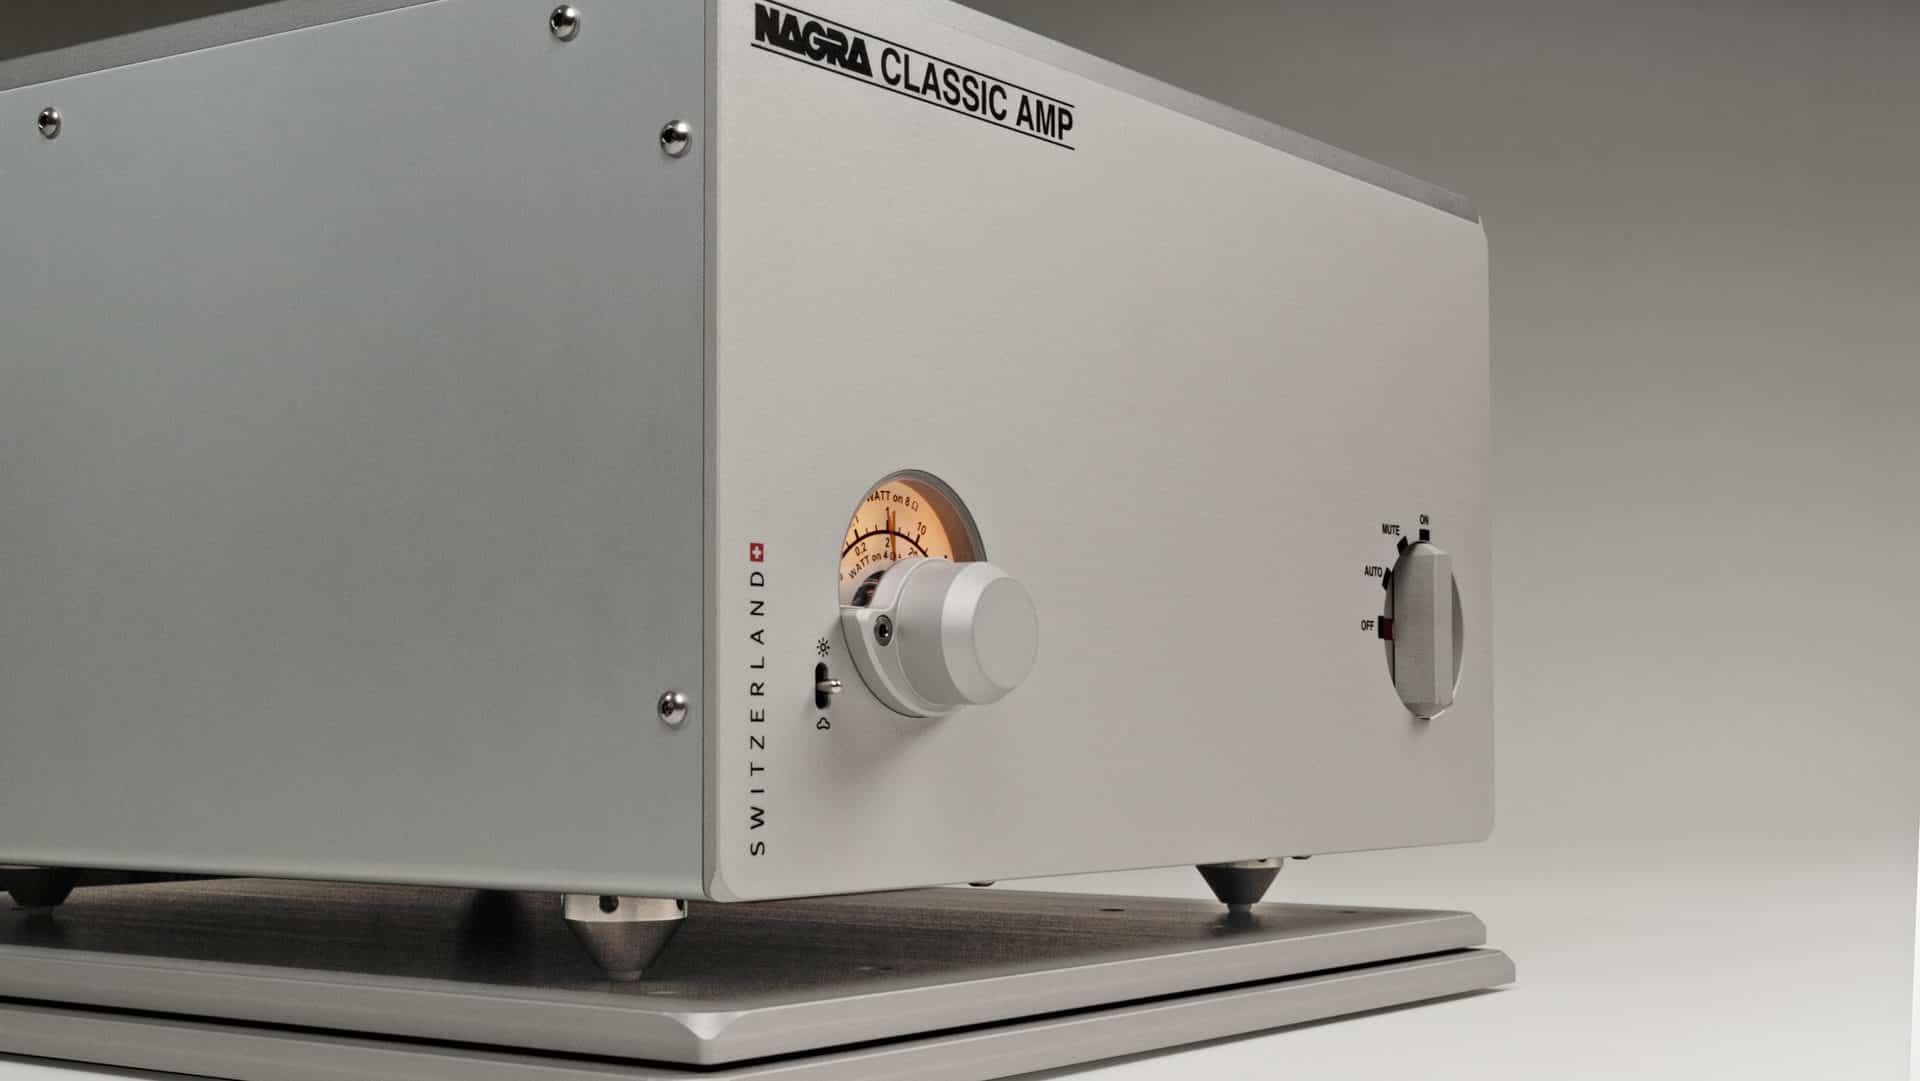 Nagra Classic Amp Festkörper Stereo Verstärker Mosfet Transistor Transformator bestes Modell Frontseite Modulometer VFS